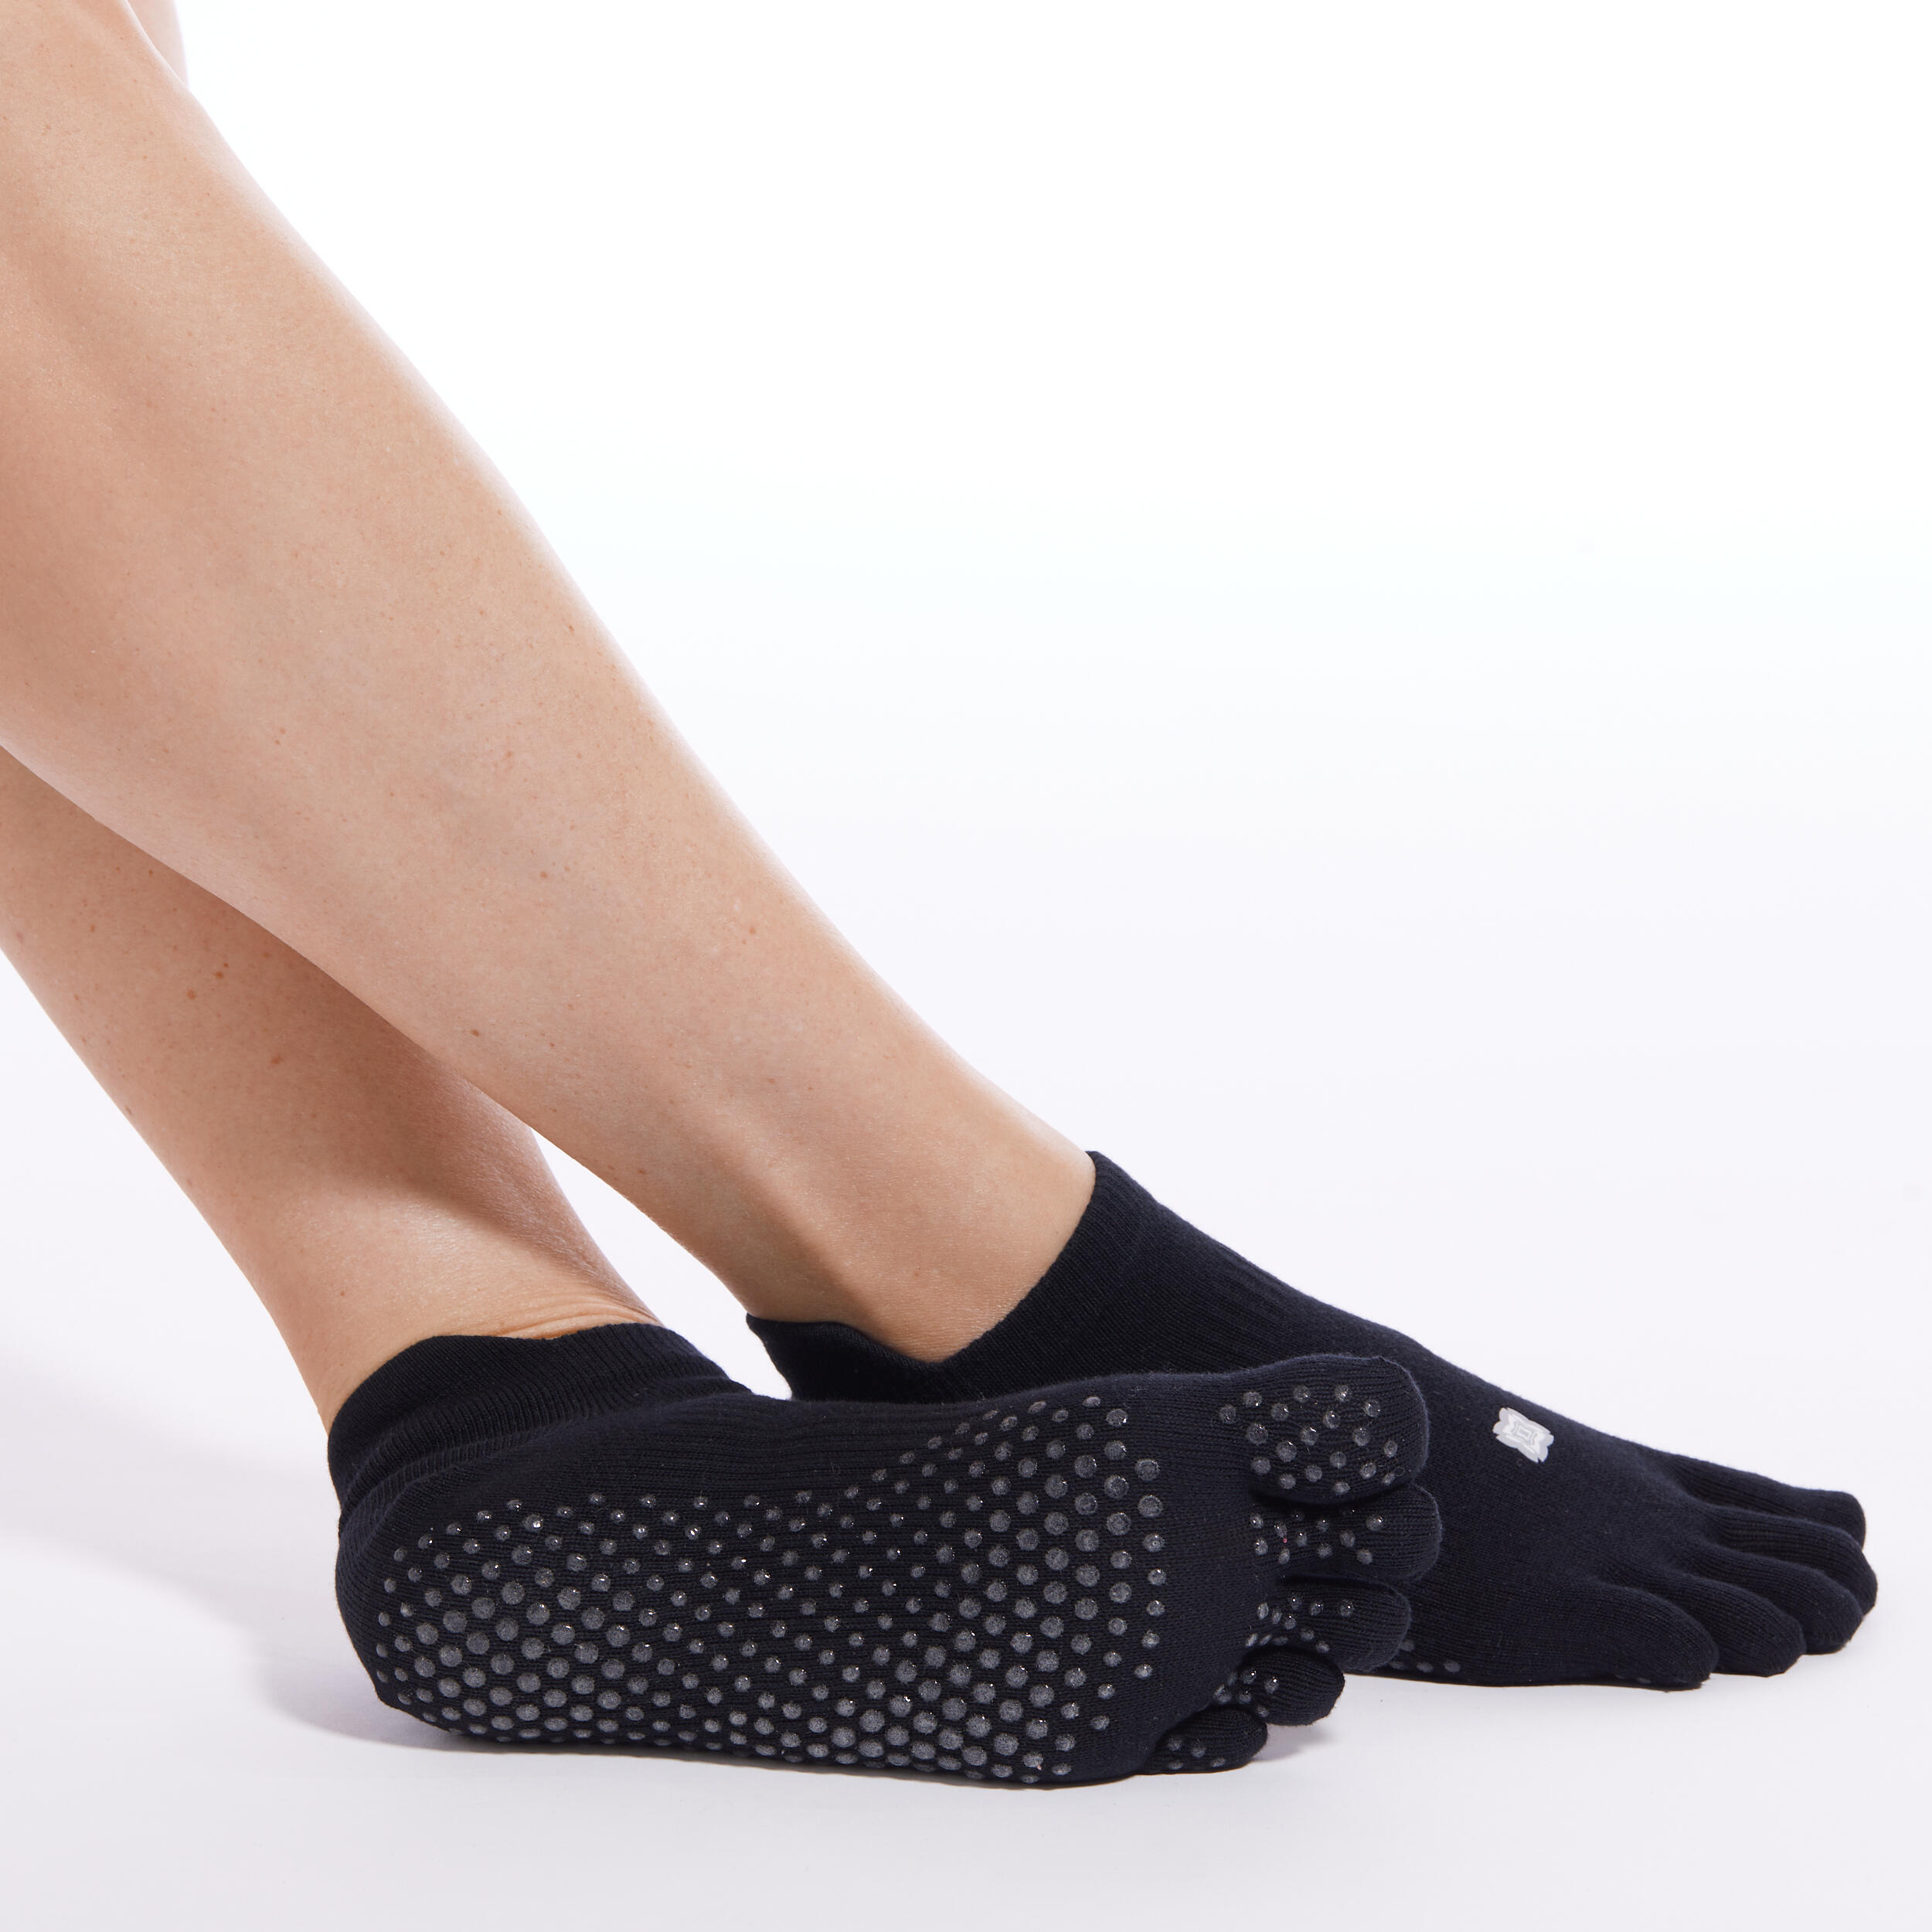 uyhghjhb Cinco Dedos Separador de Dedos Heelless algodón Transpirable Calcetines de Yoga Sandalia Calcetines Invisibles 